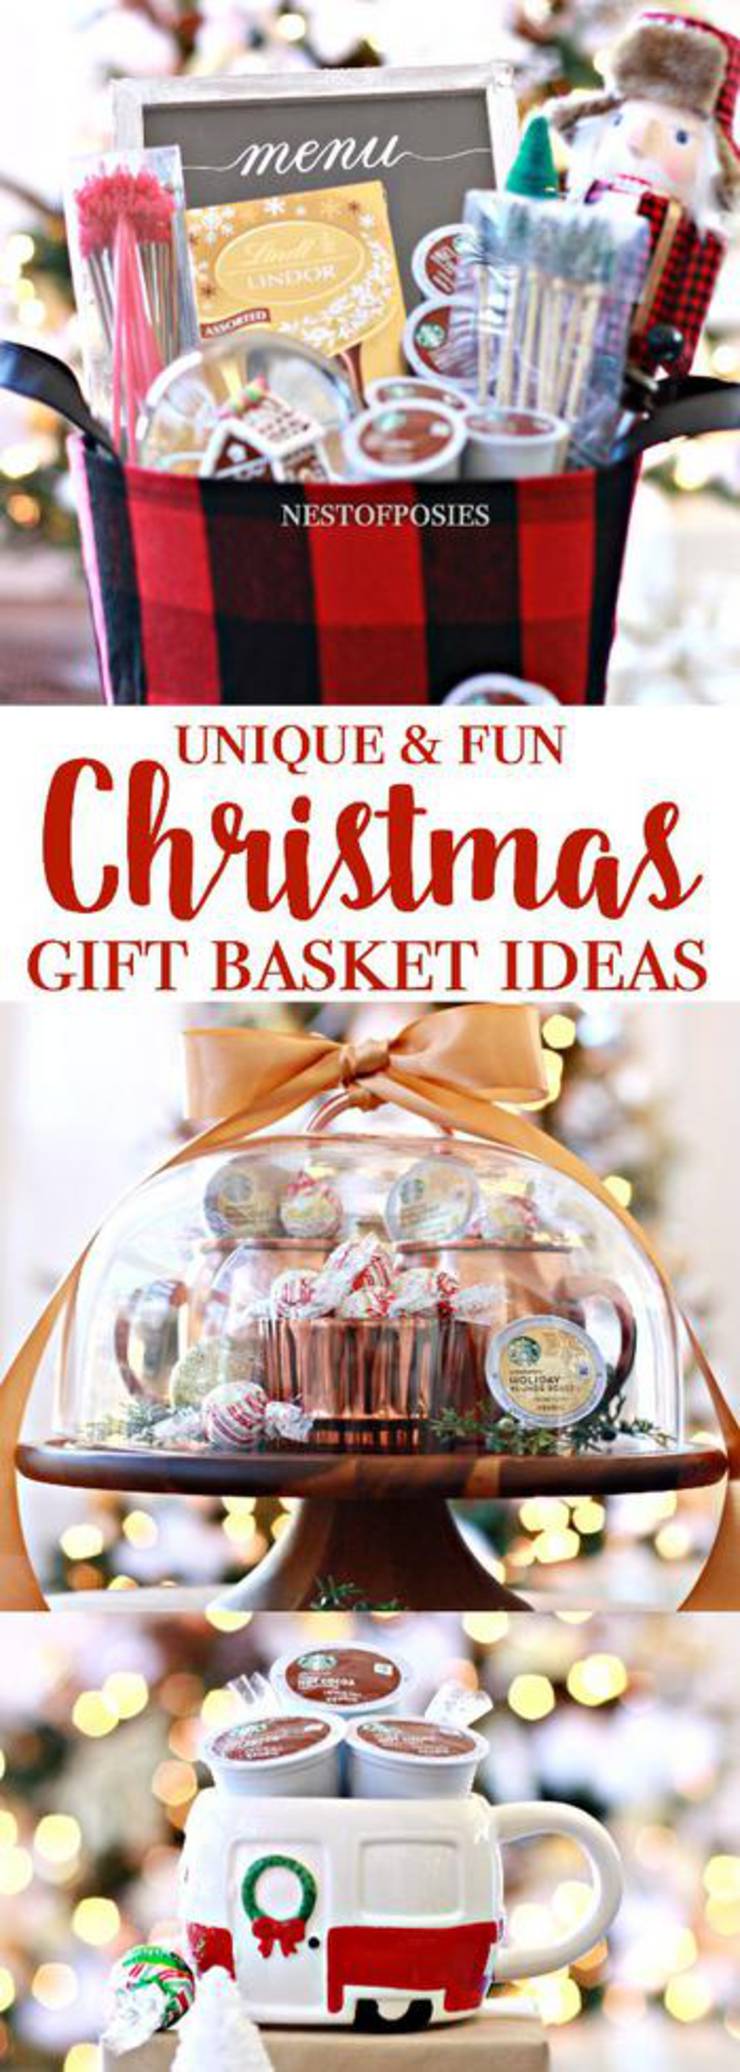 Christmas Gift Basket Idea